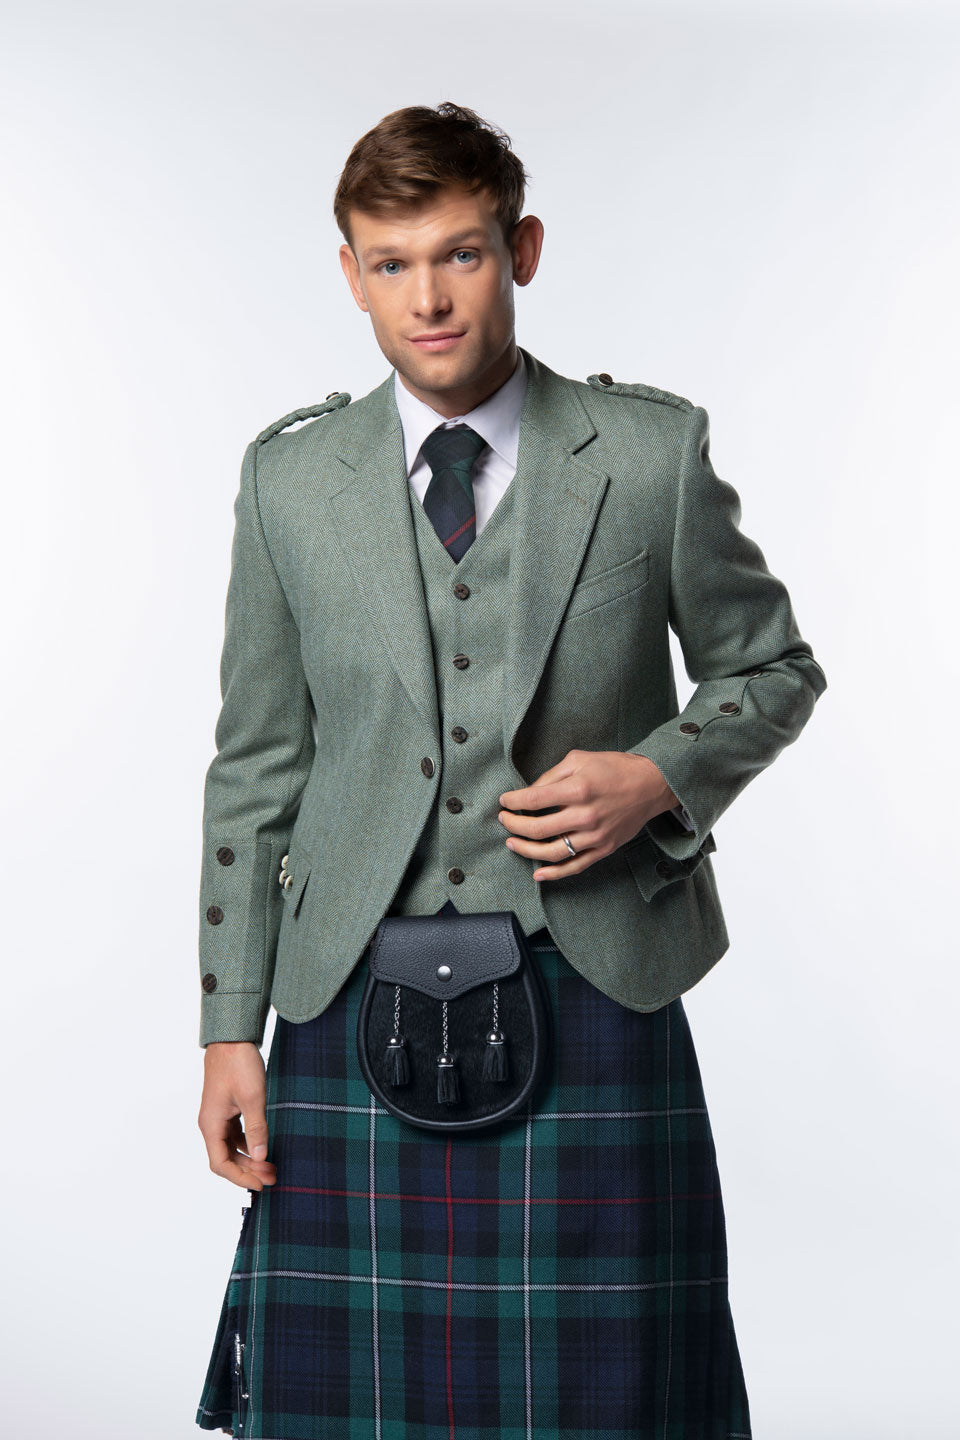 Lovat Green Tweed Kilt Jacket and Waistcoat - MacGregor and MacDuff